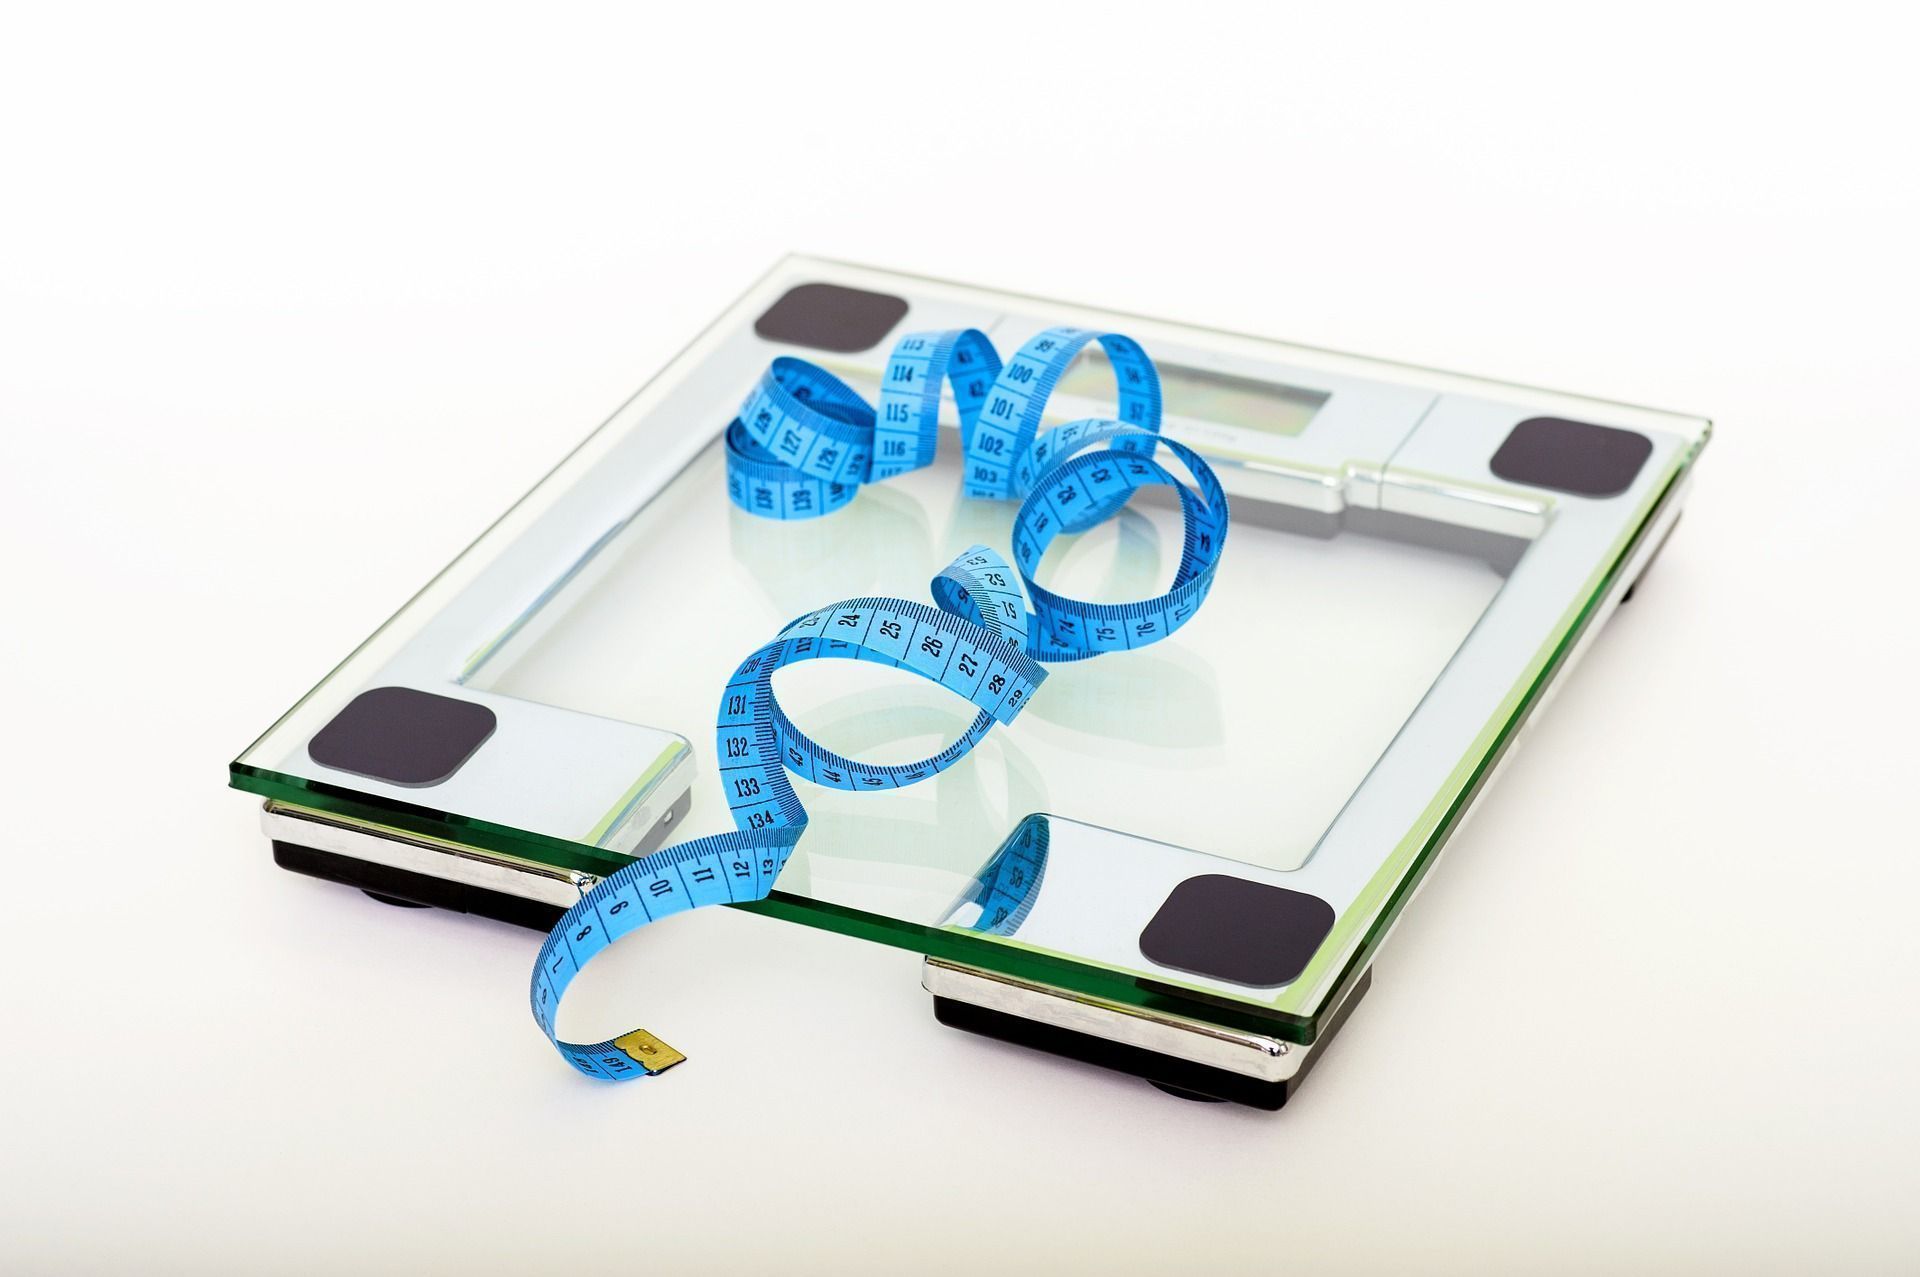 Dicas para perder peso: Elimine esses 3 alimentos e emagreça sem fazer dieta